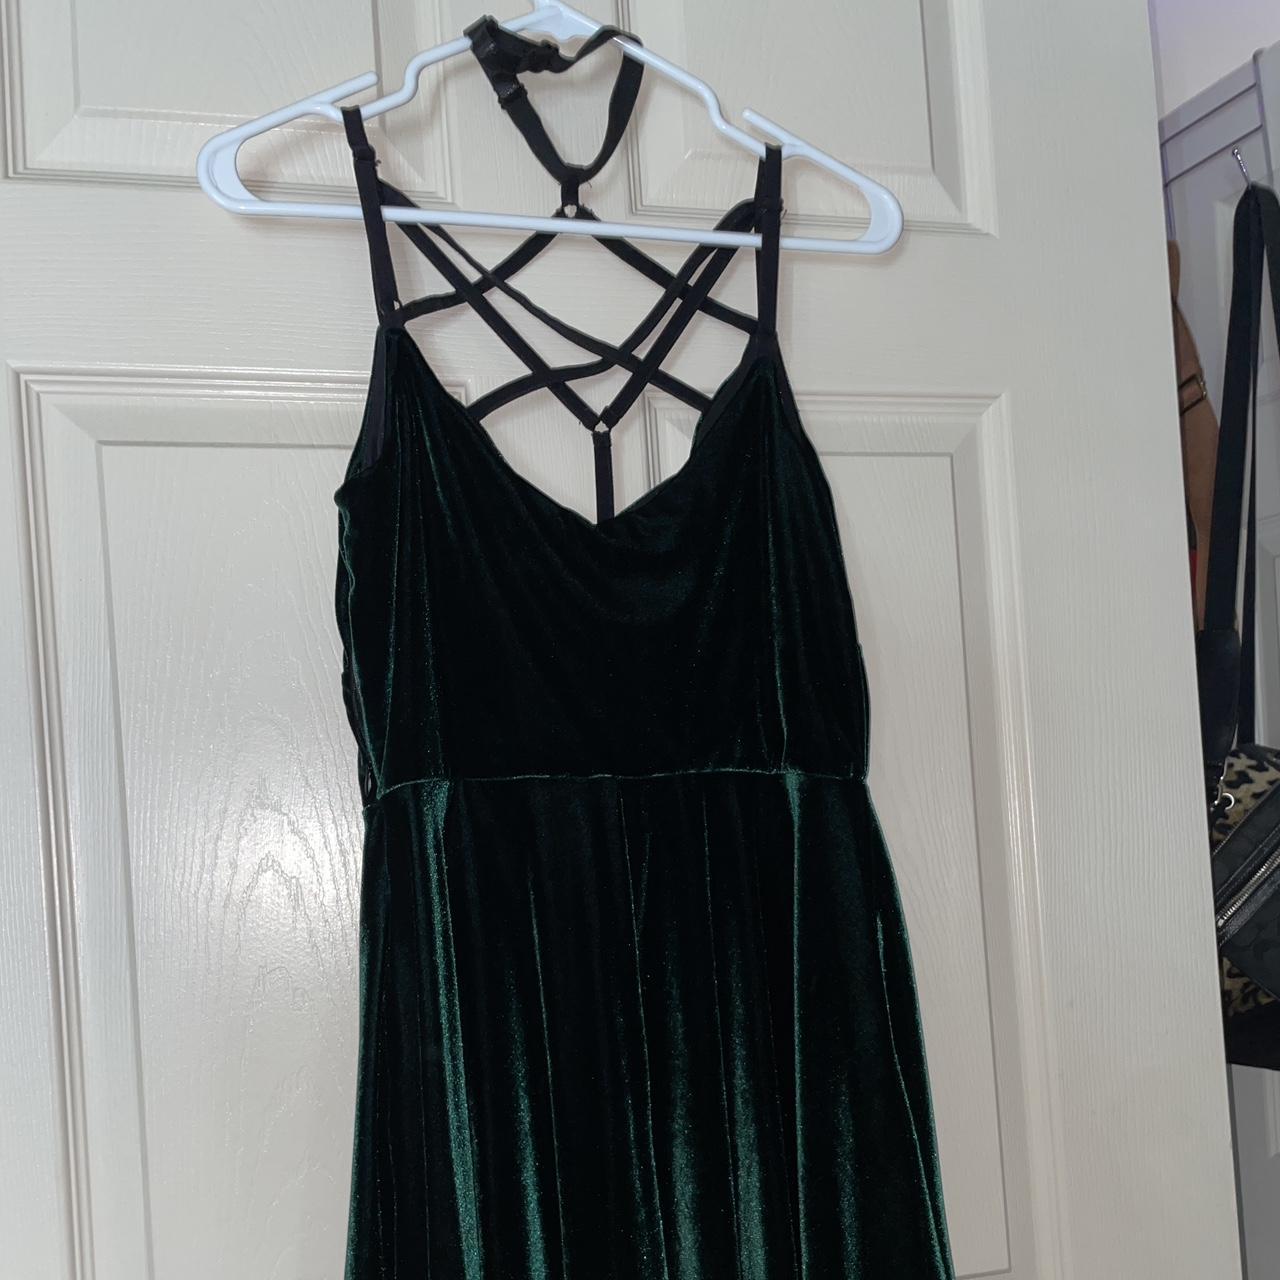 Killstar green velvet dress. Retails for $50 on... - Depop